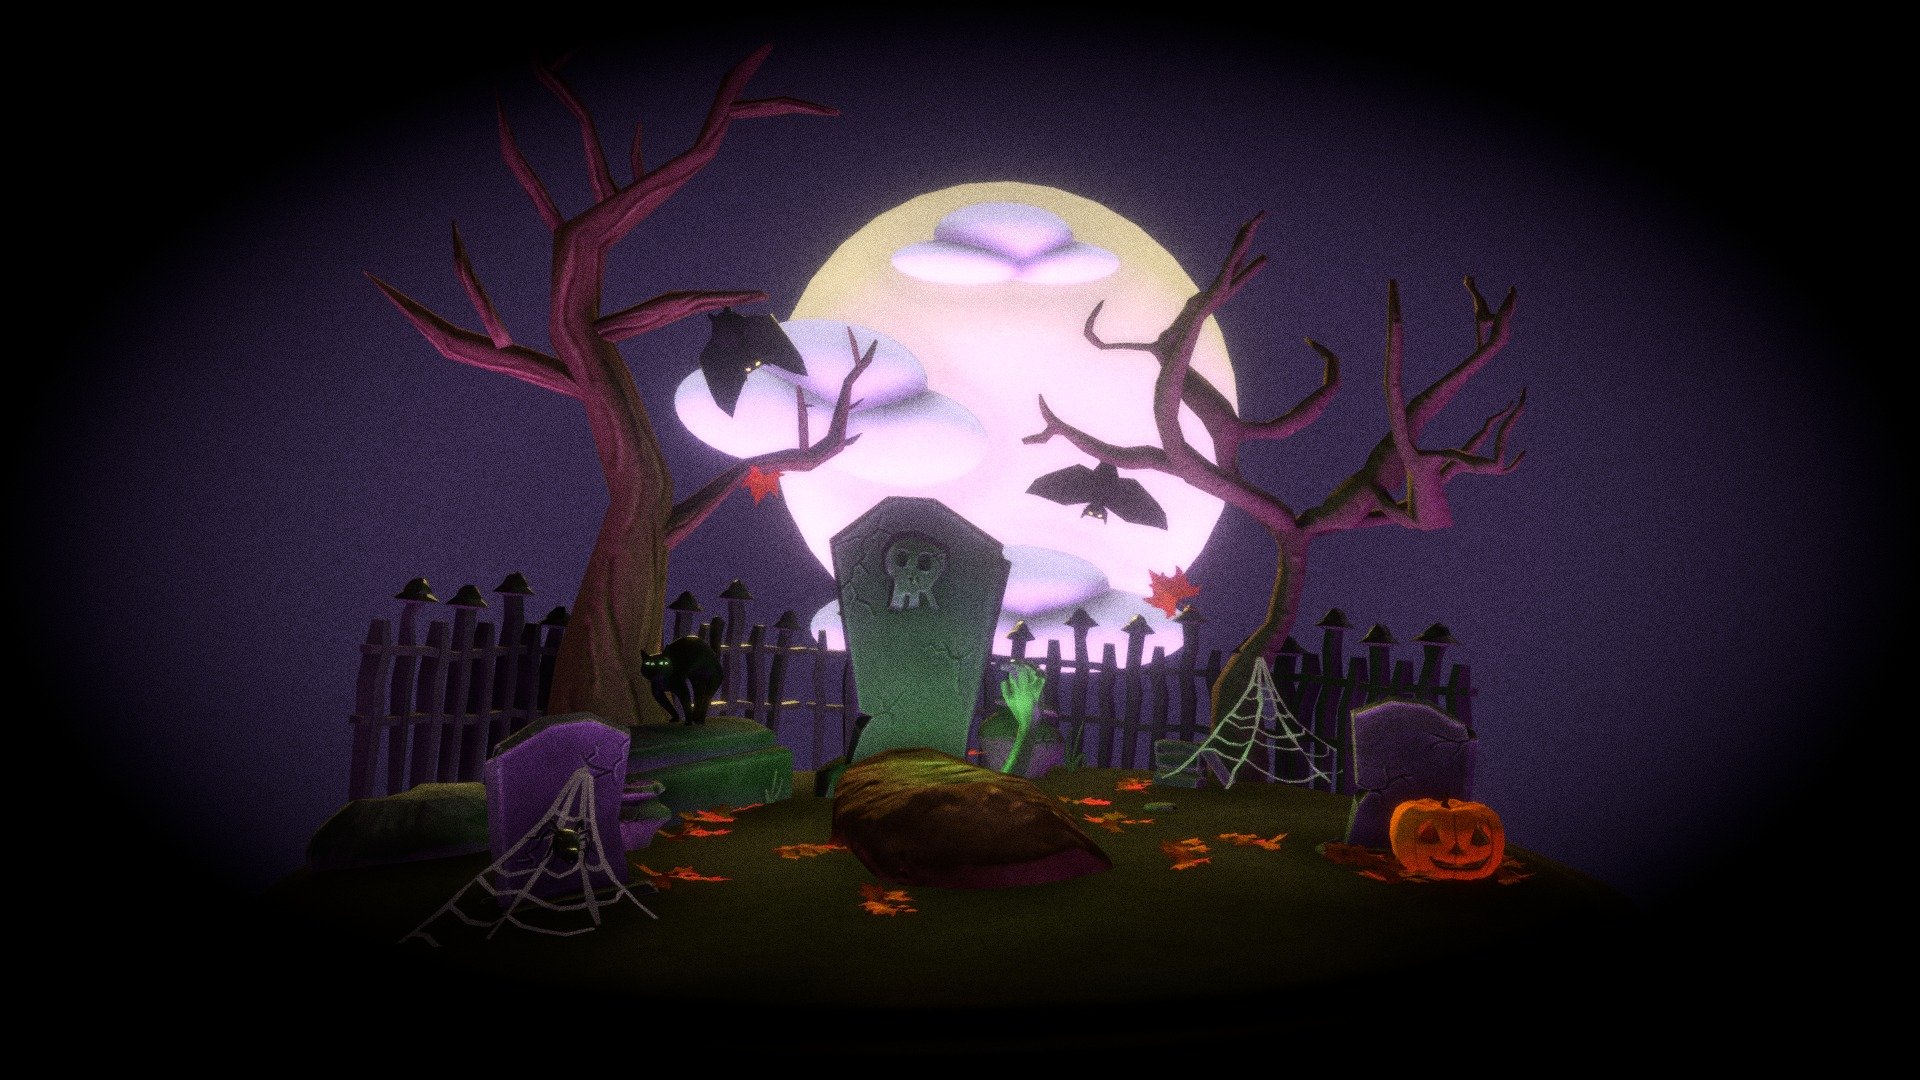 For the spirit of spoopy time! Enjoy - Happy Halloween Pt. 2 - 3D model by JessSwynn 3d model